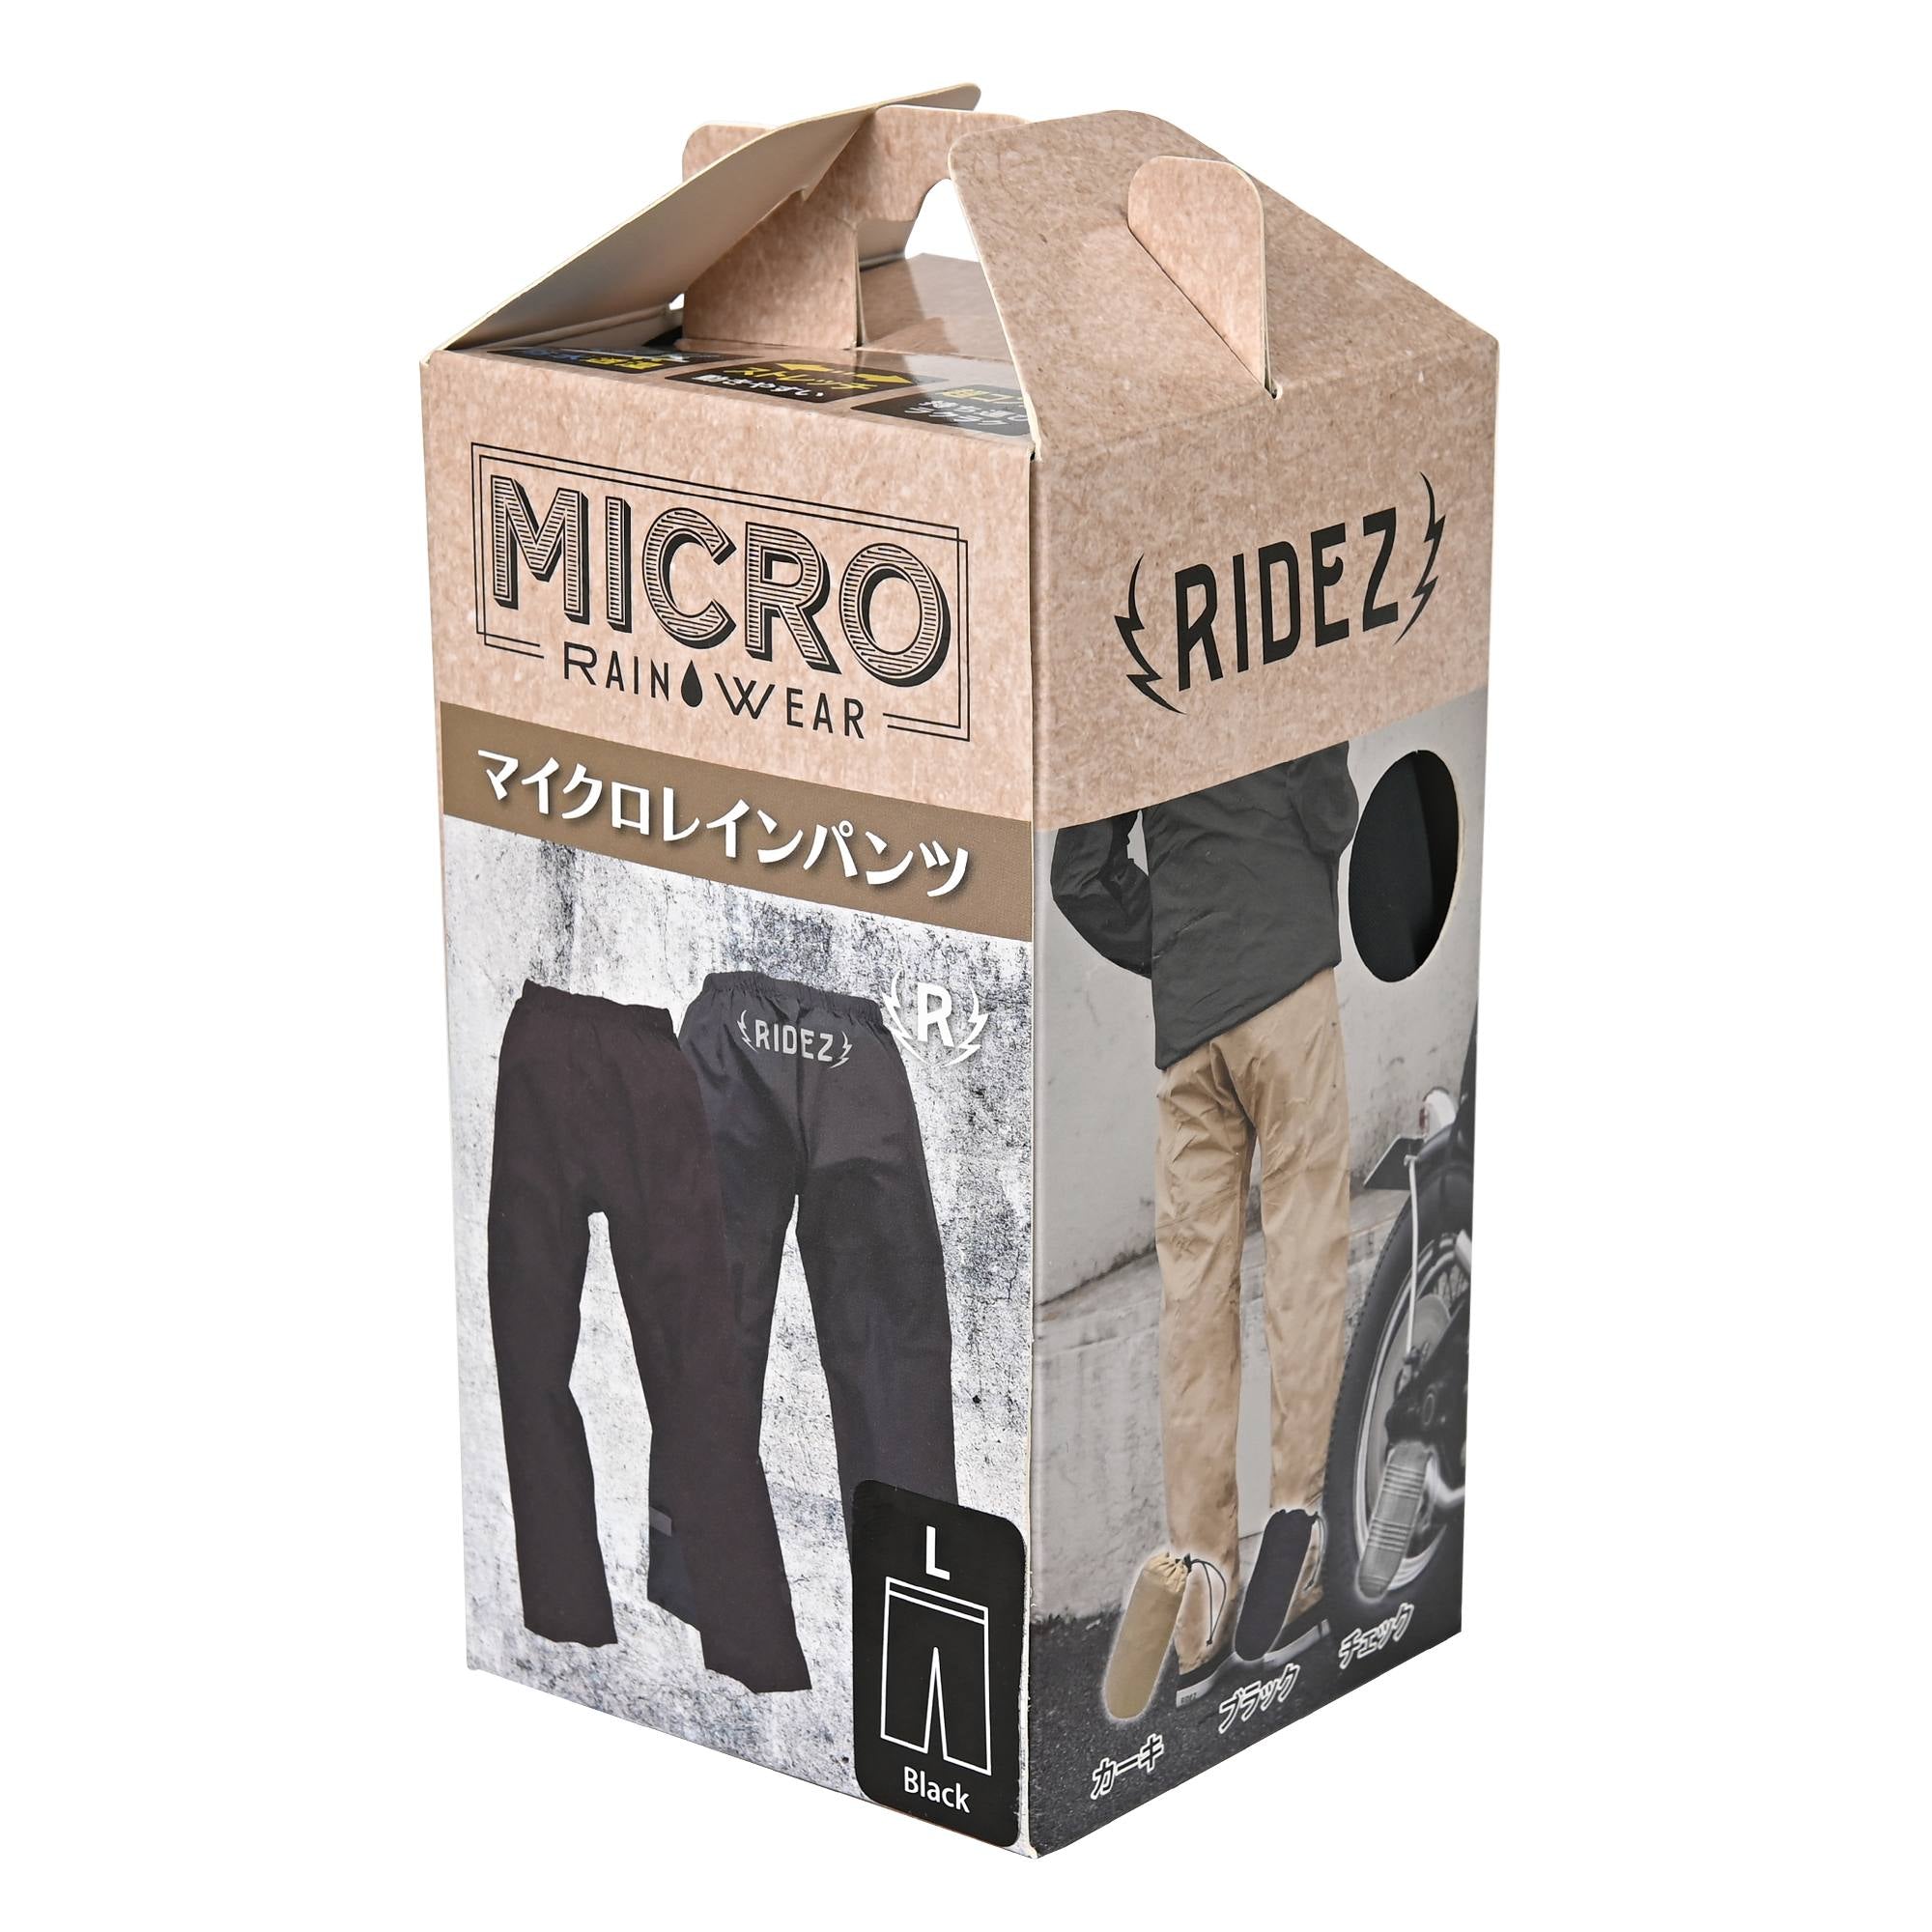 RIDEZ 摩托车雨裤 MICRO RAINPANTS KHAKI MCR04 